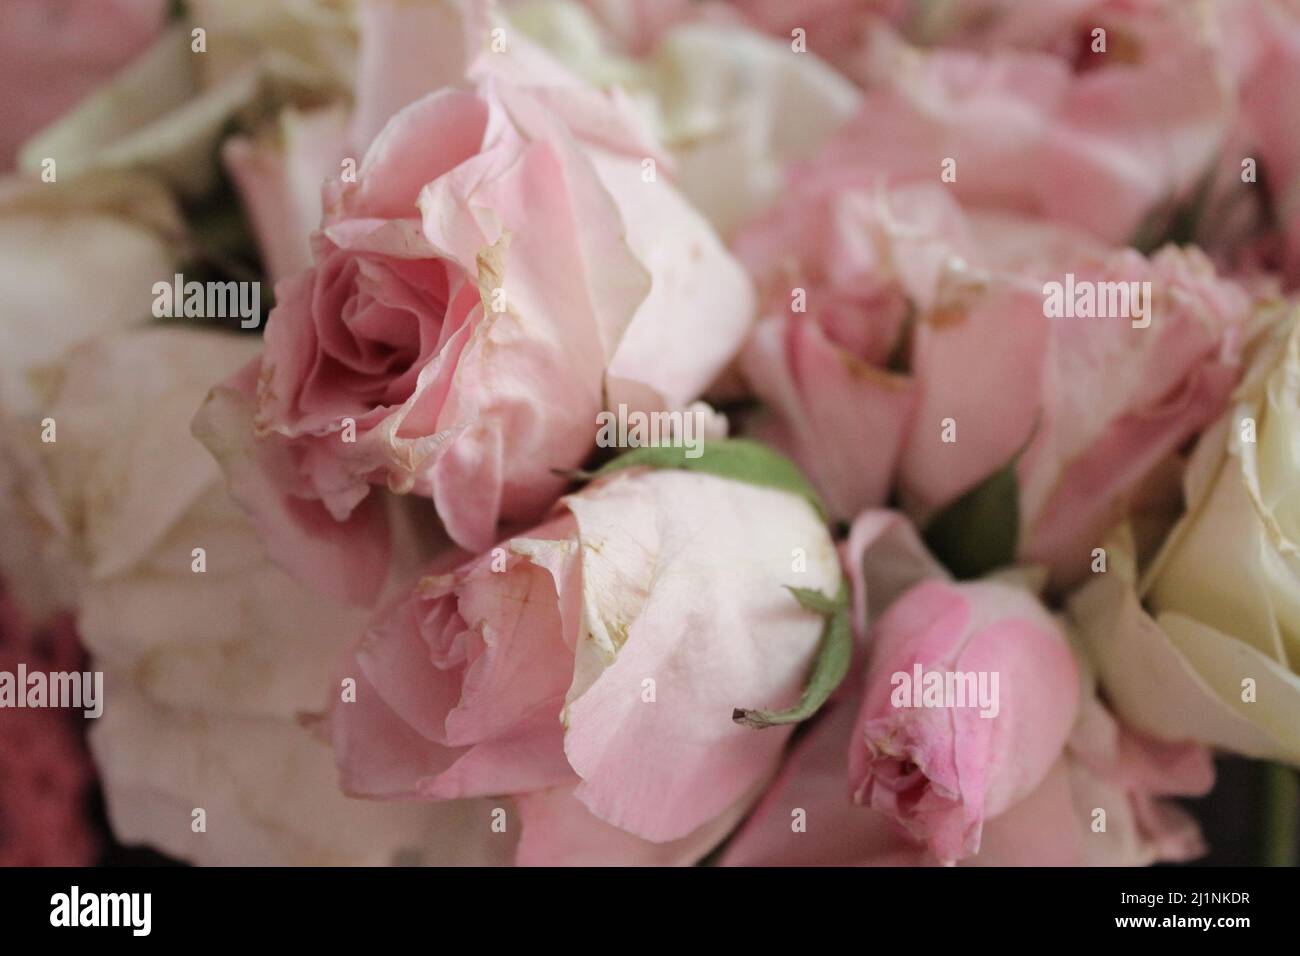 hermoso ramo de flores de rosas blancas y rosadas para decoración o regalo de boda Foto de stock